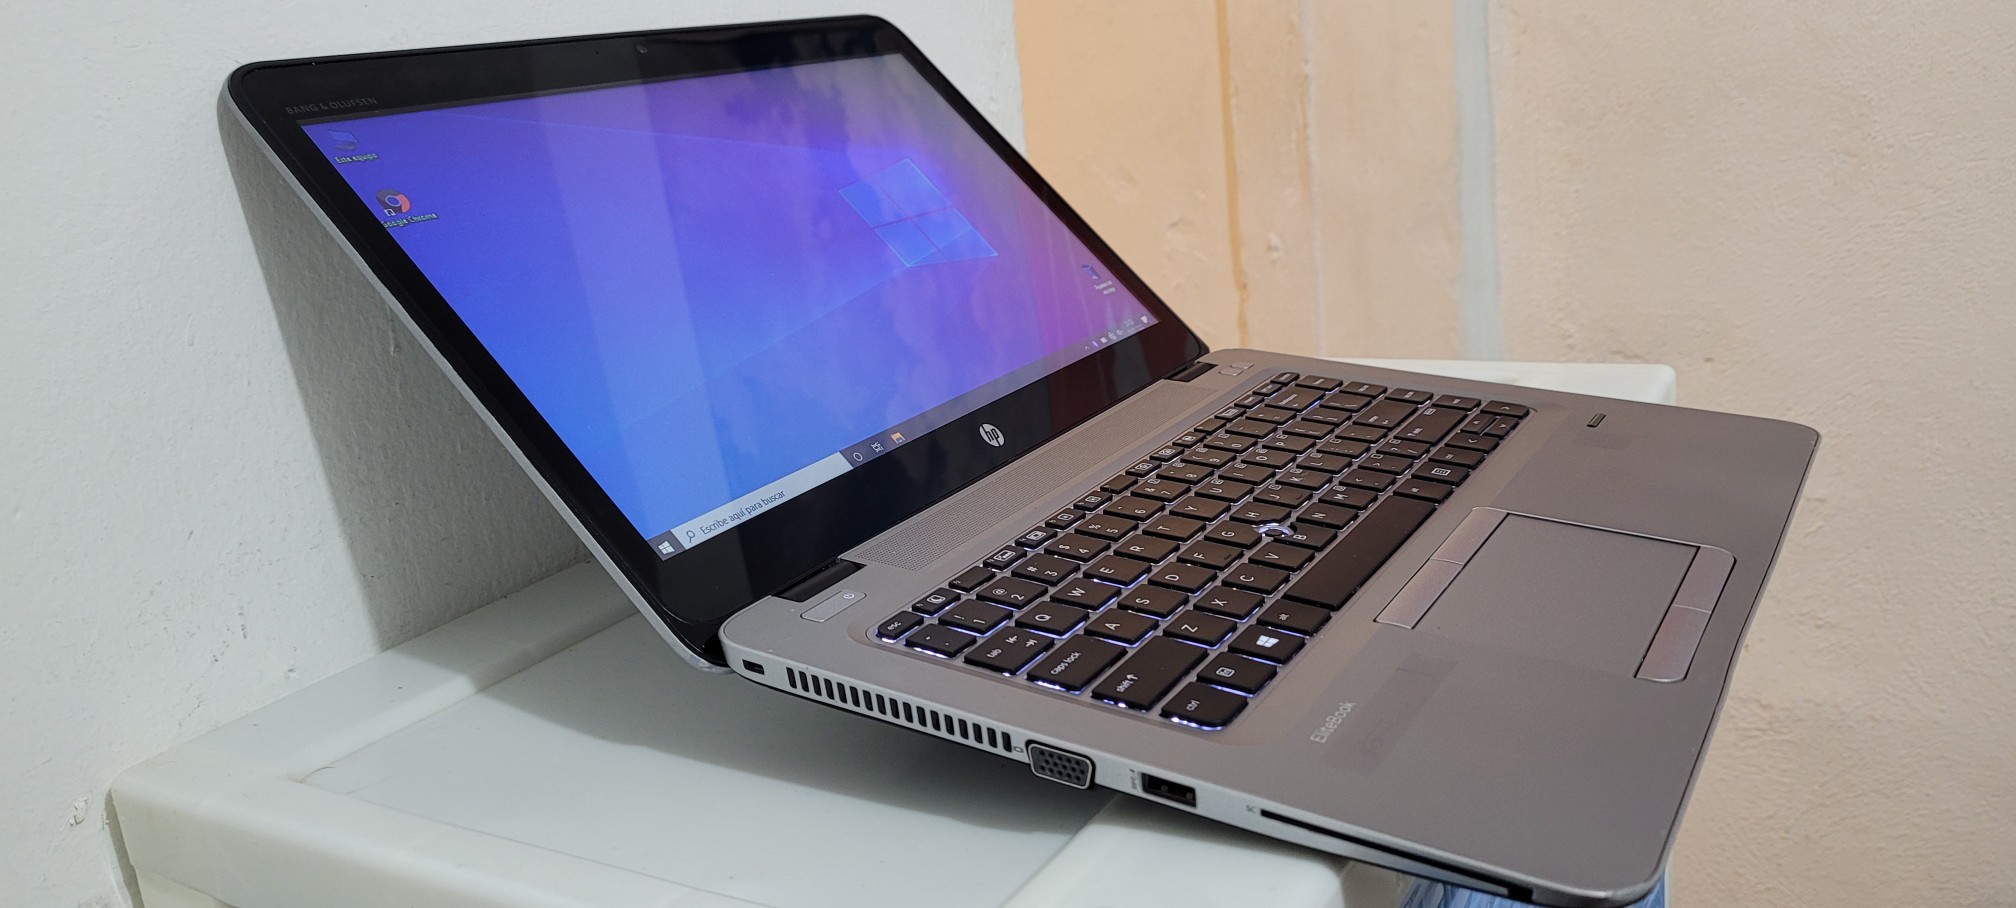 computadoras y laptops - laptop hp Slim G3 14 Pulg Core i5 6ta Gen Ram 8gb ddr4 Disco 128gb Wifi 1